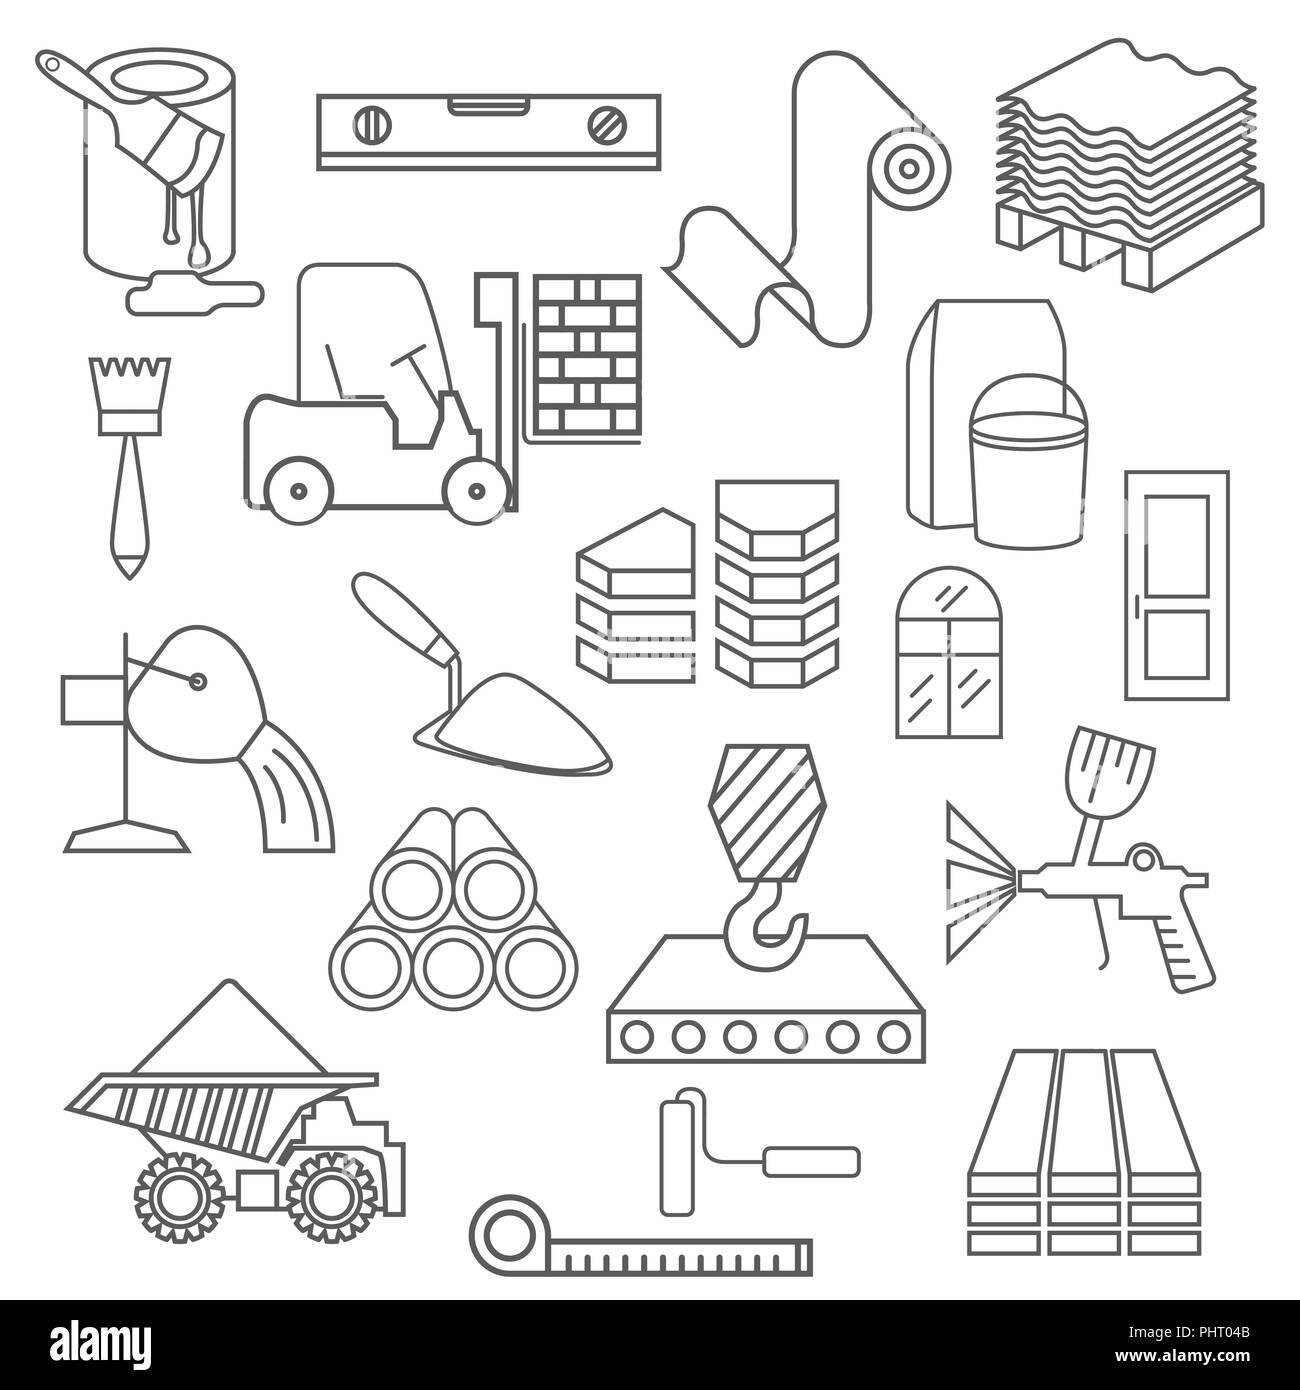 Bau- und Ausbaumaterialien Icon Set. Thin Line Design isoliert auf Weiss. Ihre industriellen Infografiken Sammlung erstellen. Vector Illustration Stock Vektor